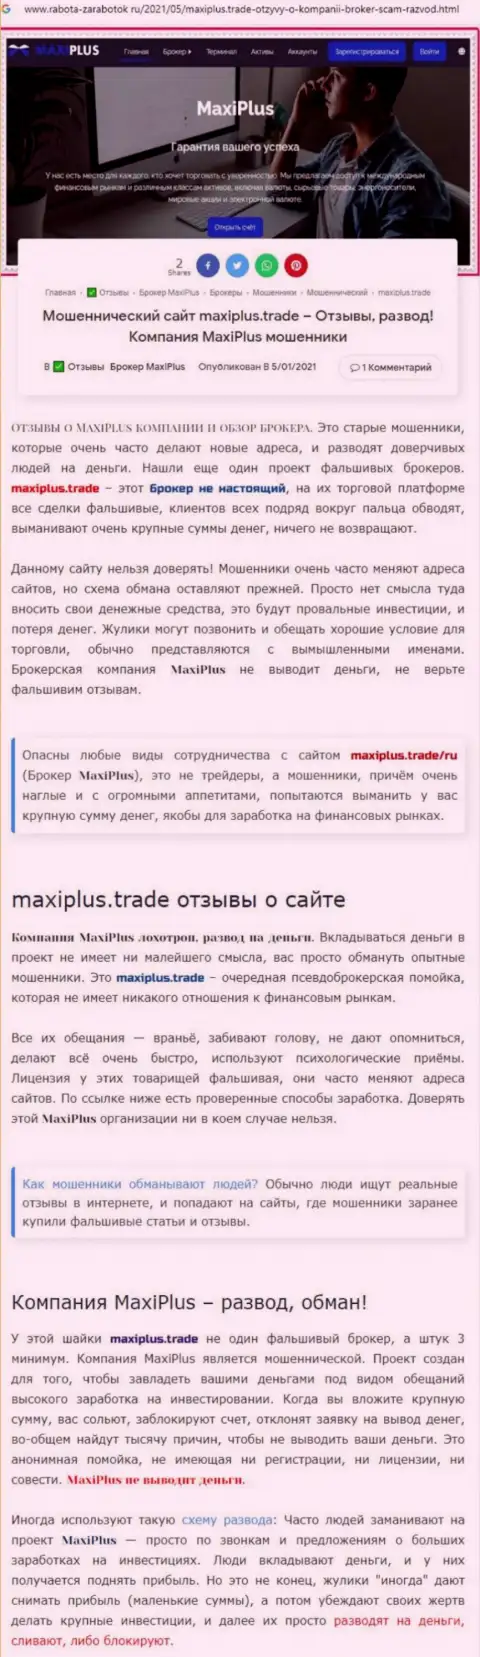 Maxi Plus - это АФЕРИСТЫ !!! Принцип работы РАЗВОДНЯКА (обзор противозаконных деяний)